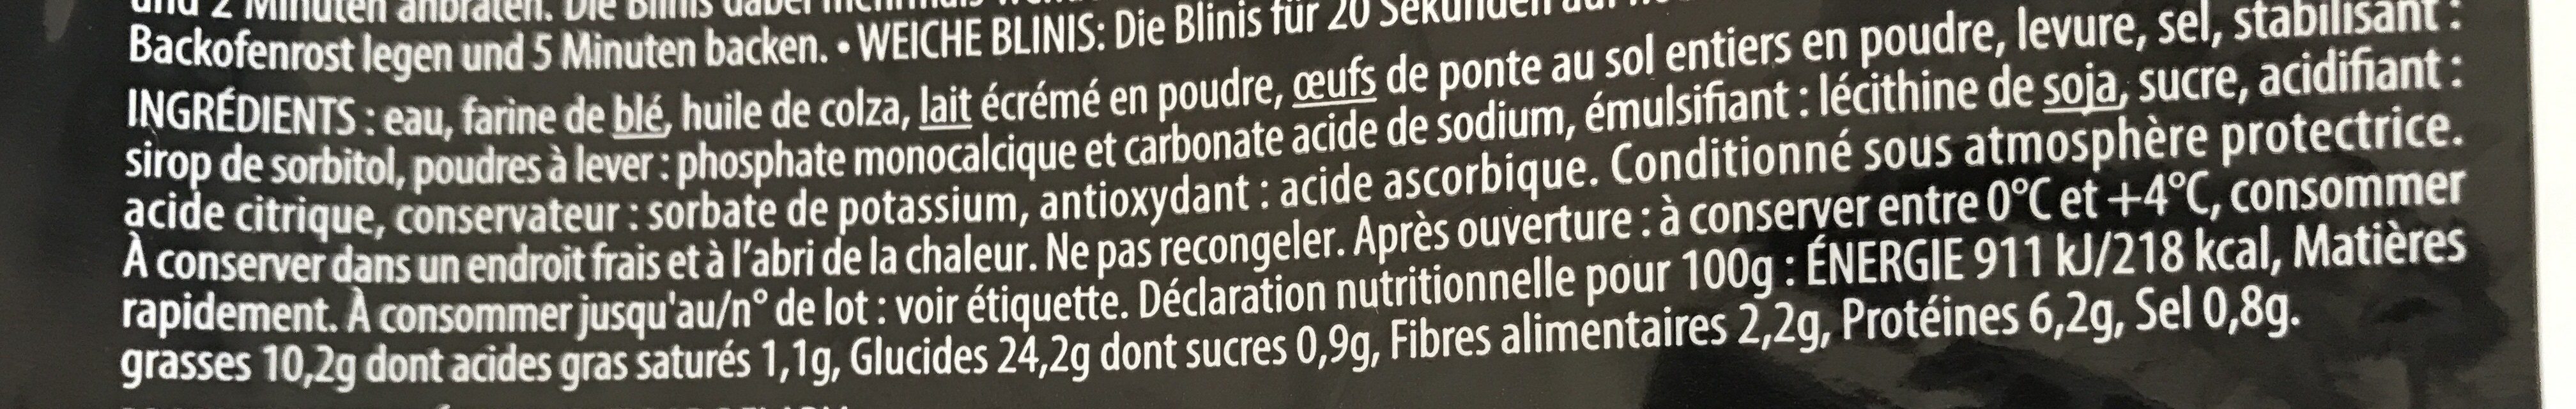 20 Mini Blinis - Ingredients - fr